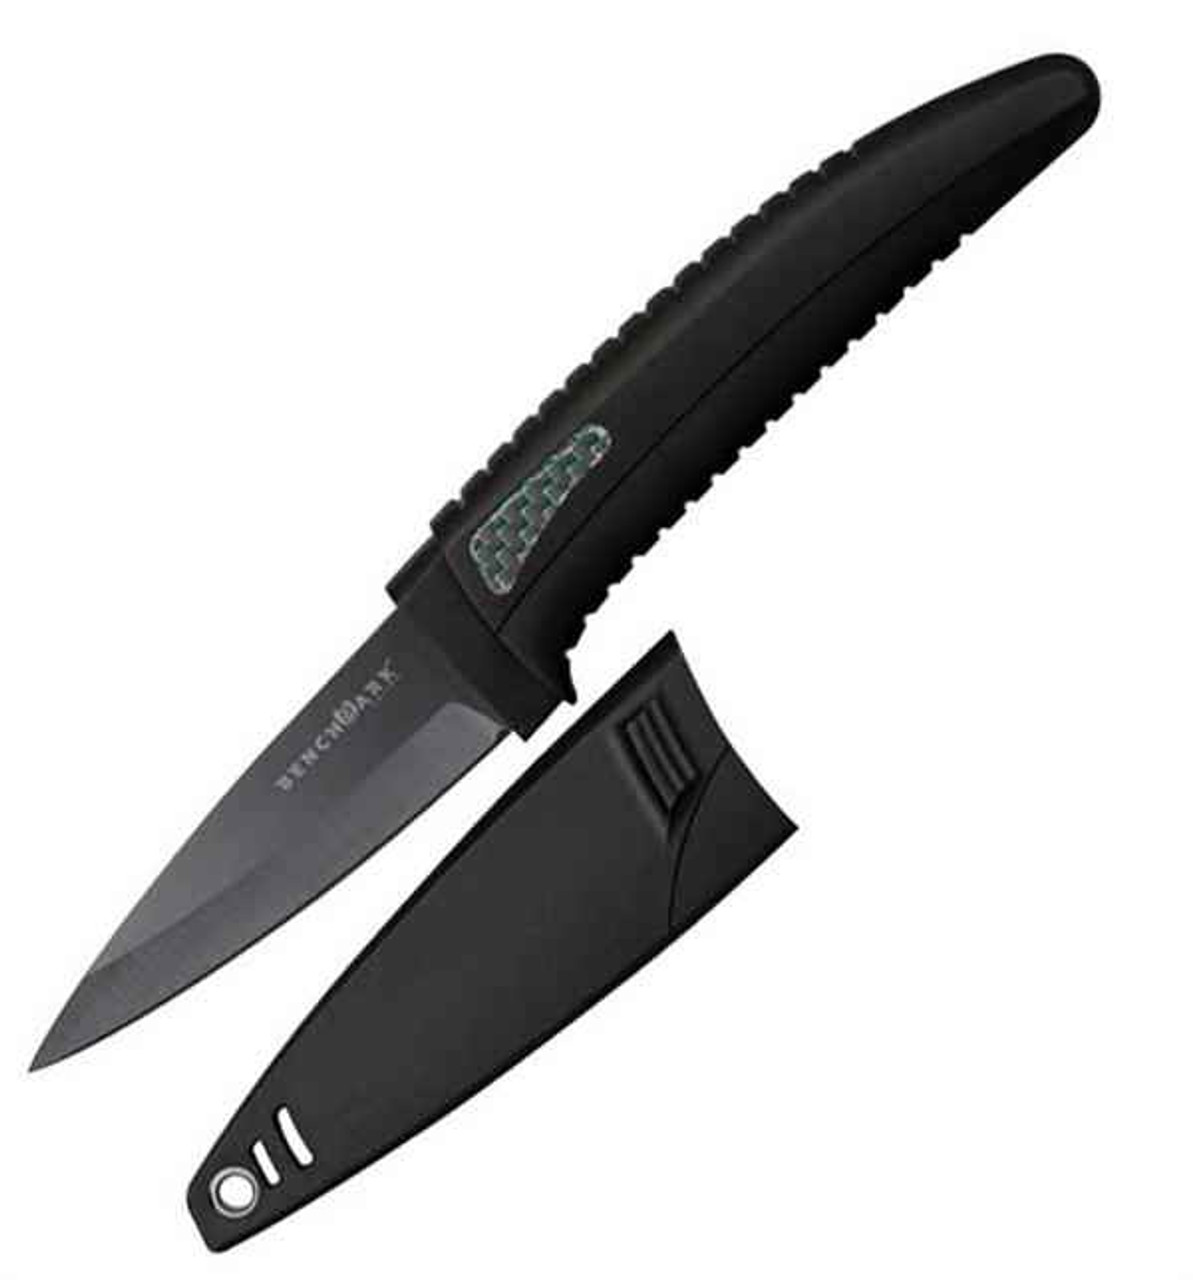 BenchMark Ceramic Blade Knife